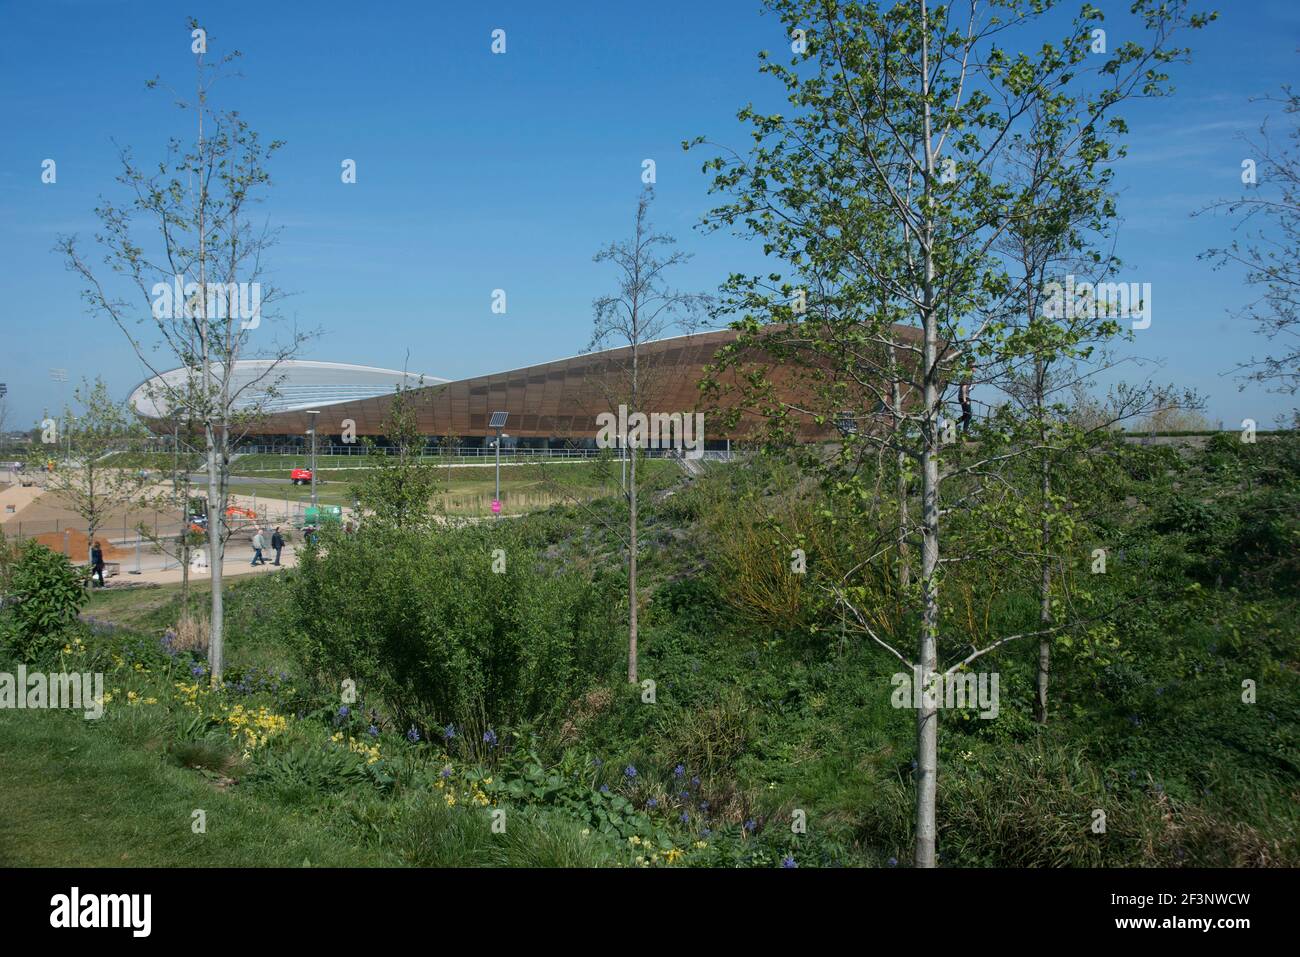 Le vélodrome conçu par Hopkins Architects, Parc olympique Queen Elizabeth, Stratford, Londres, E20, Royaume-Uni Banque D'Images